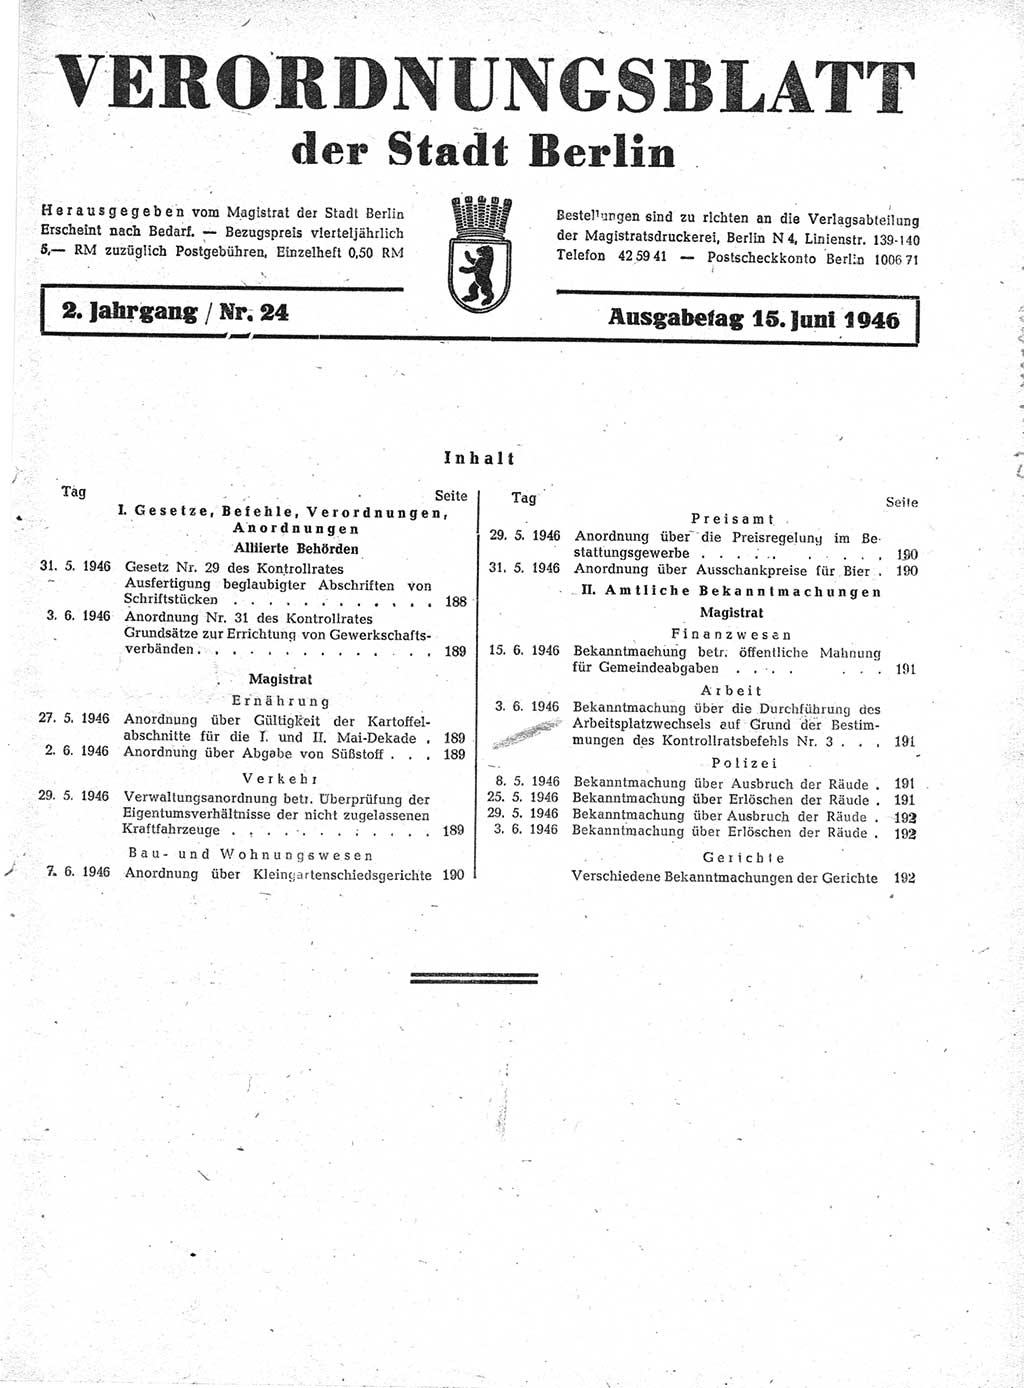 Verordnungsblatt (VOBl.) der Stadt Berlin, für Groß-Berlin 1946, Seite 187 (VOBl. Bln. 1946, S. 187)